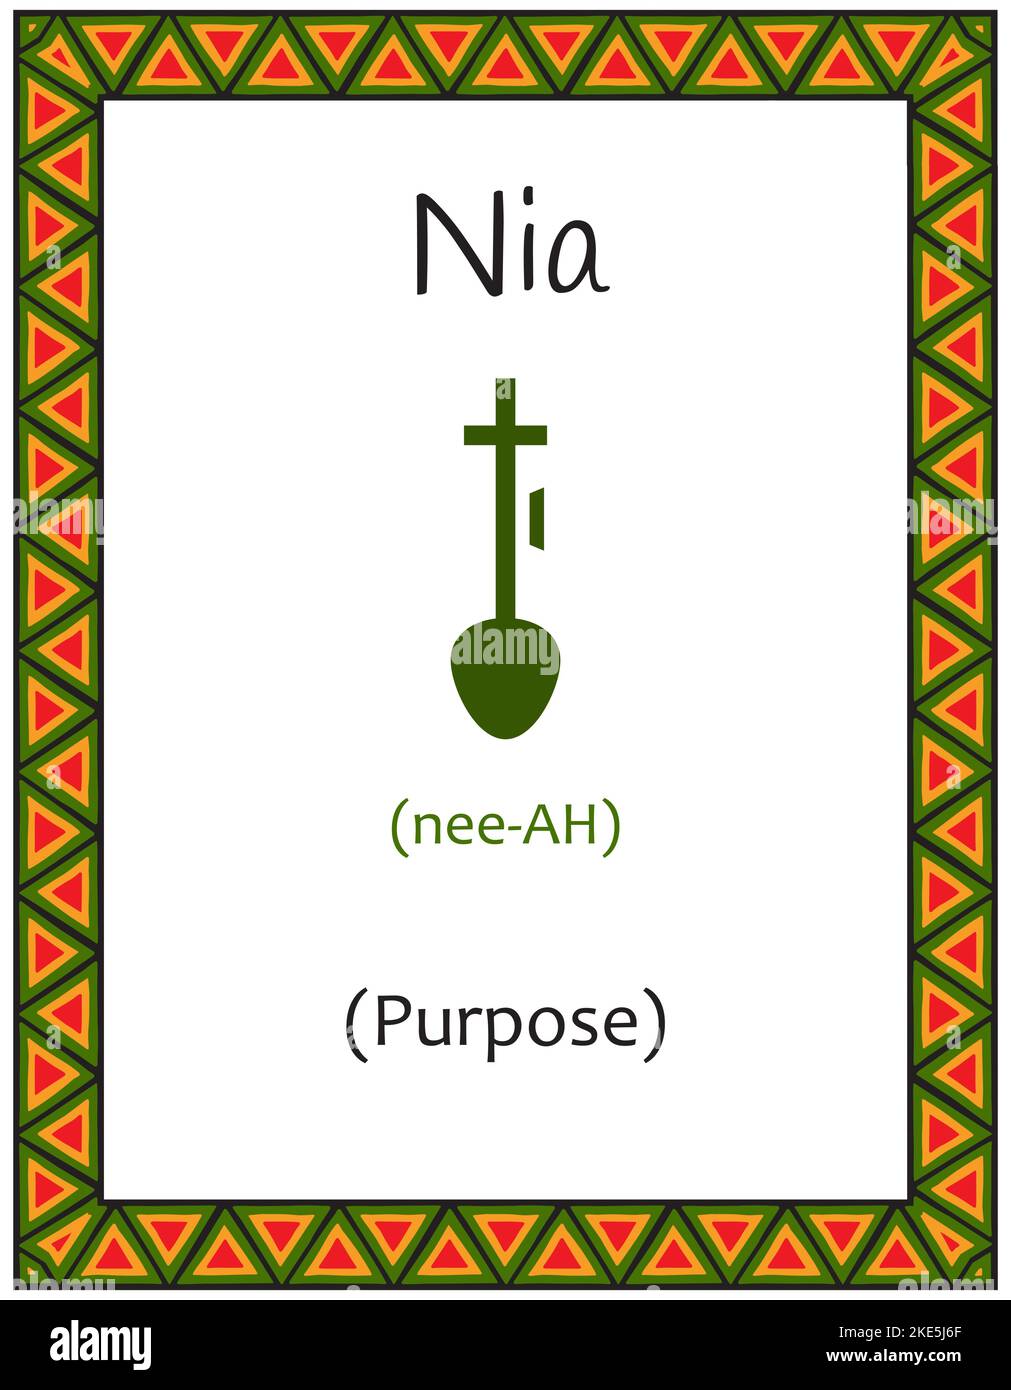 Eine Karte mit einem der Kwanzaa-Prinzipien. Symbol Nia bedeutet Zweck in Suaheli. Poster mit ethnisch afrikanischem Muster in traditionellen Farben. Vektor-il Stock Vektor